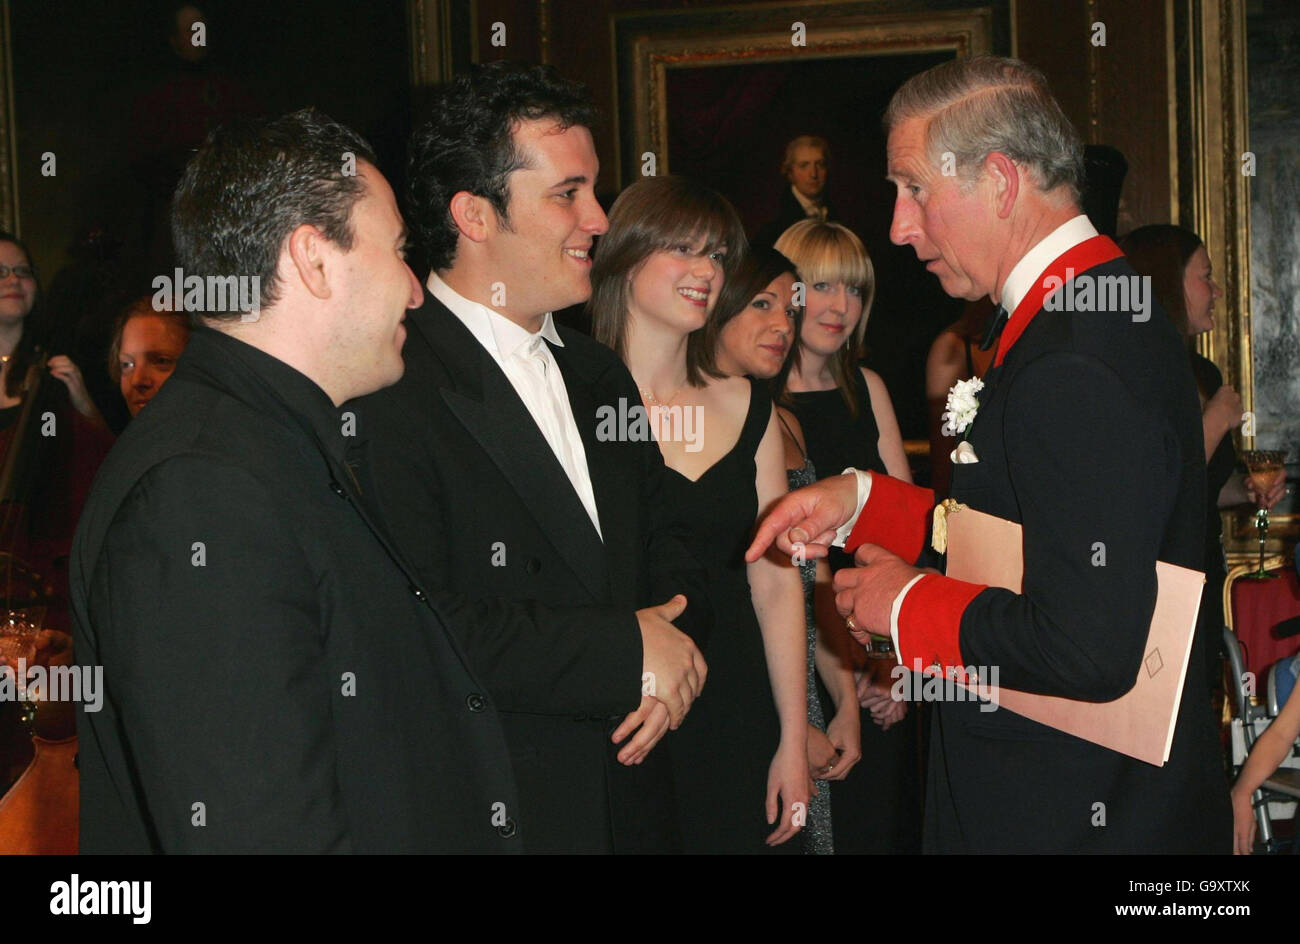 El Príncipe de Gales El Príncipe de Gales se reúne con Maxi Vergerov, violinista, e Igor Levit, pianista que fue el principal preformador en un concierto en el que se celebró el 30th aniversario de la Música en Vivo Ahora en el Castillo de Windsor. Foto de stock